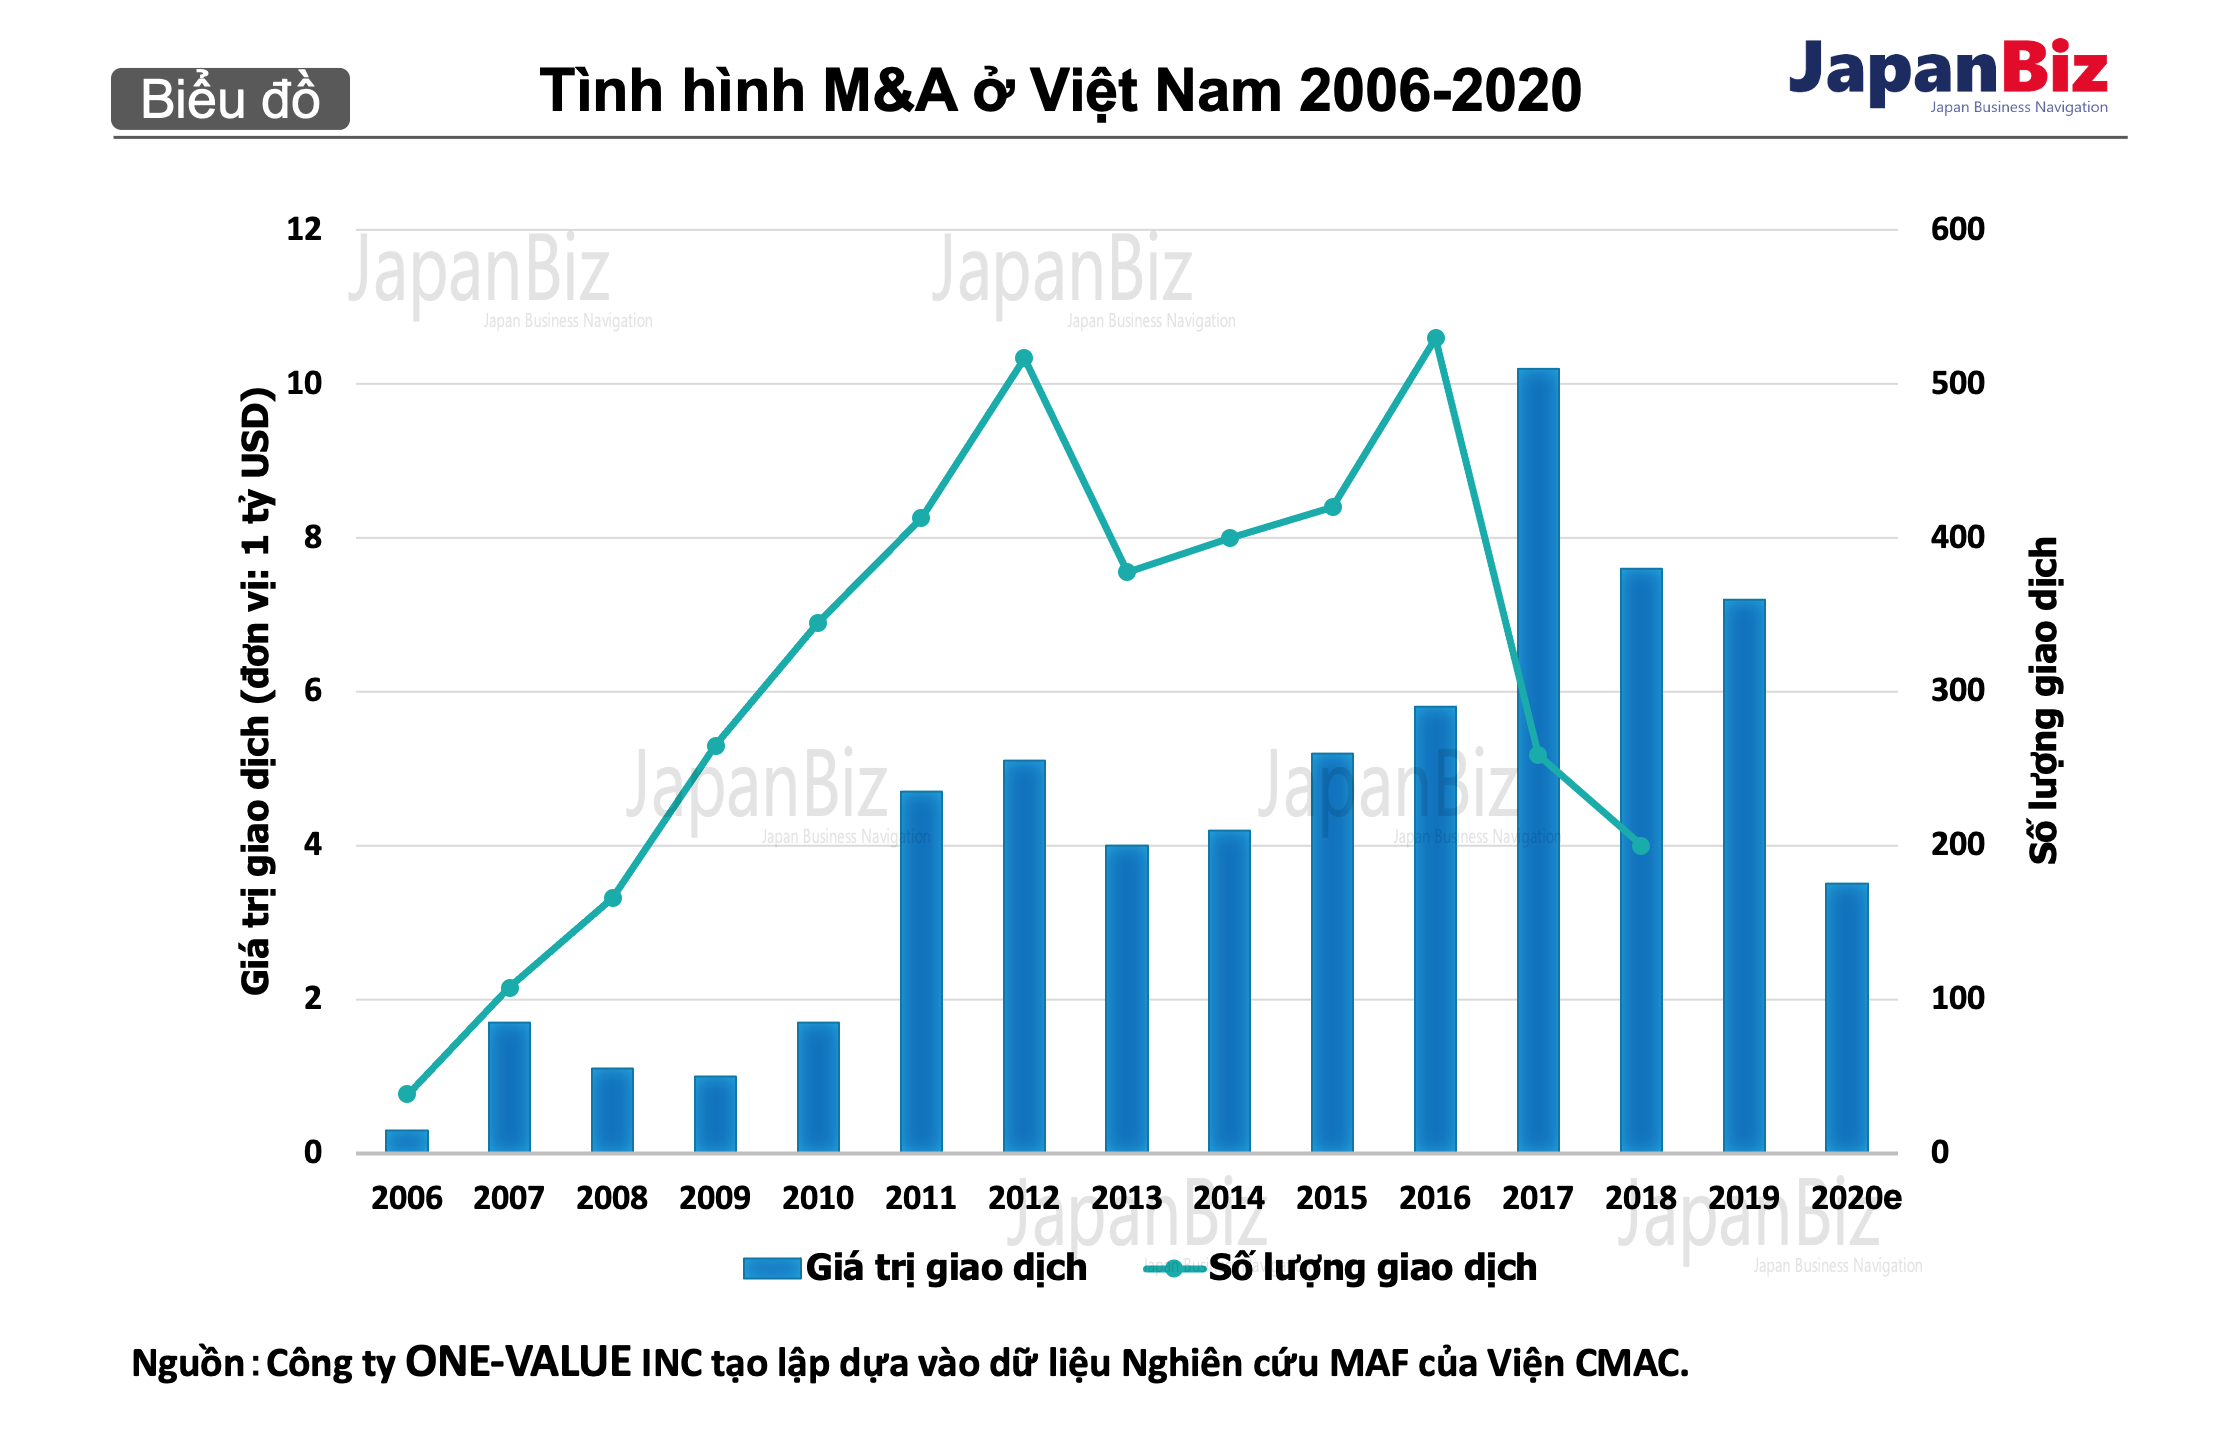 Tình hình M&A ở Việt Nam 2006-2020.